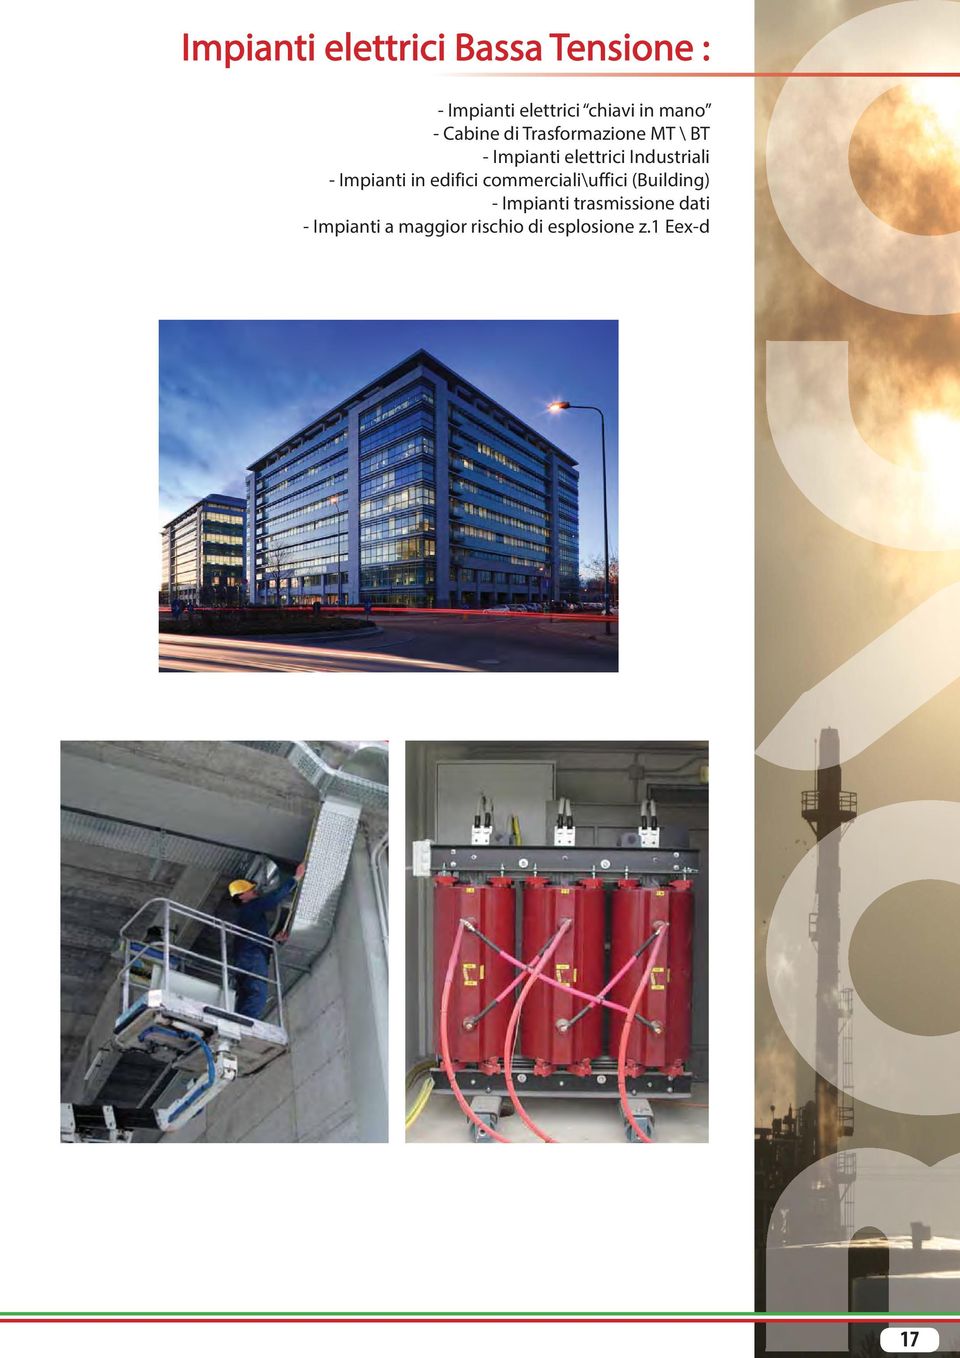 Industriali - Impianti in edifici commerciali\uffici (Building) -